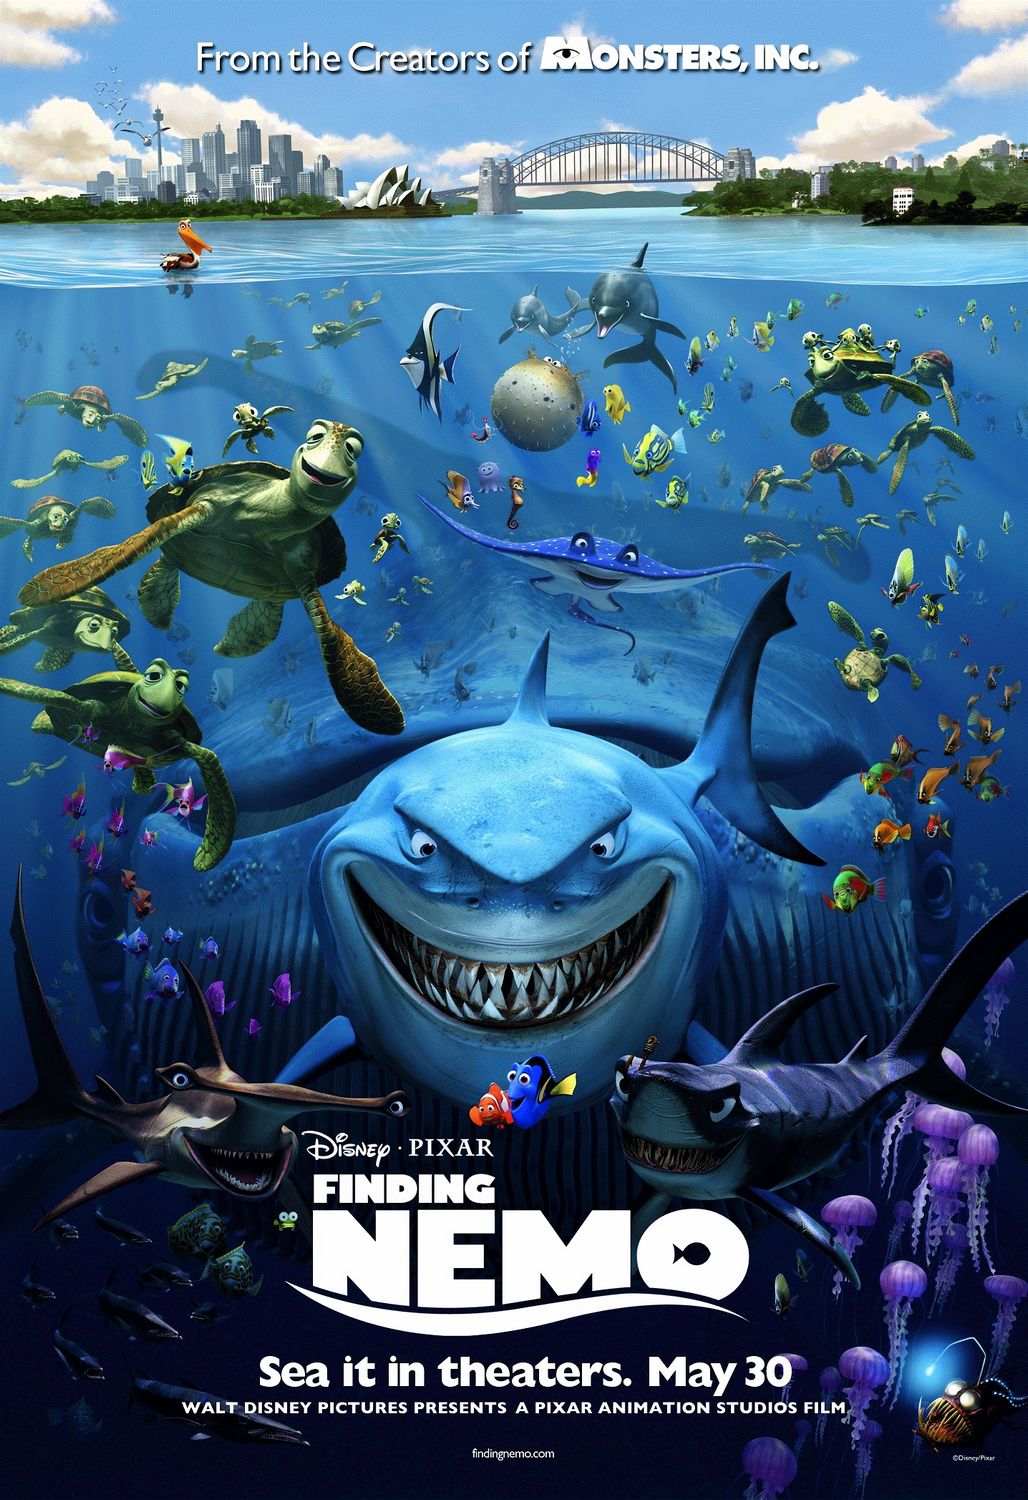 Tìm Nemo là một bộ phim hoạt hình rất nổi tiếng của Disney với câu chuyện về cuộc phiêu lưu tìm kiếm Nemo của bố và bạn của Nemo. Hãy xem hình ảnh liên quan để cảm nhận được vẻ đẹp và hoành tráng của bộ phim này.